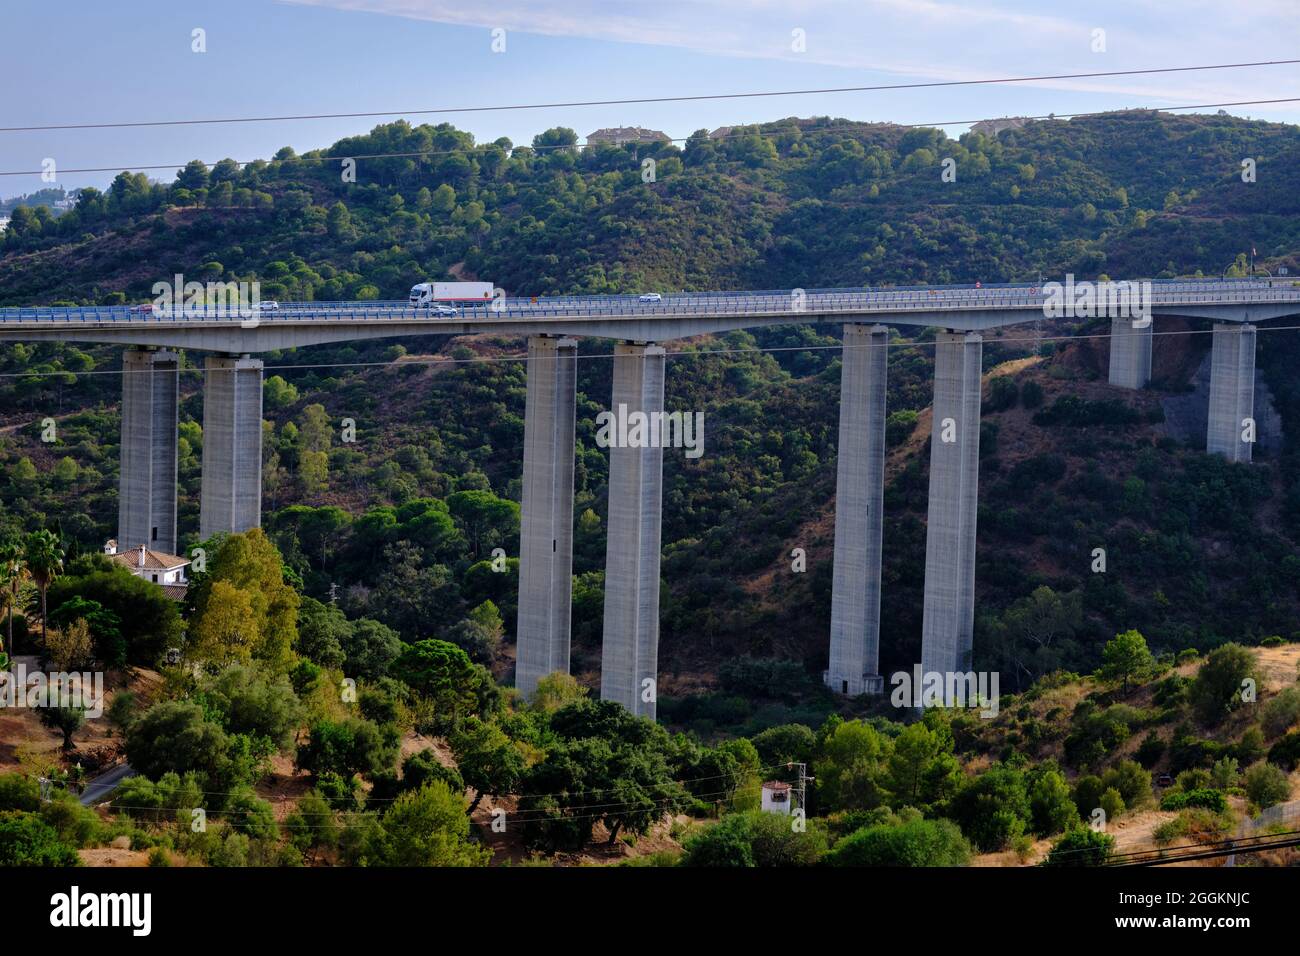 Viaduct over Rio Verde in Marbella Stock Photo